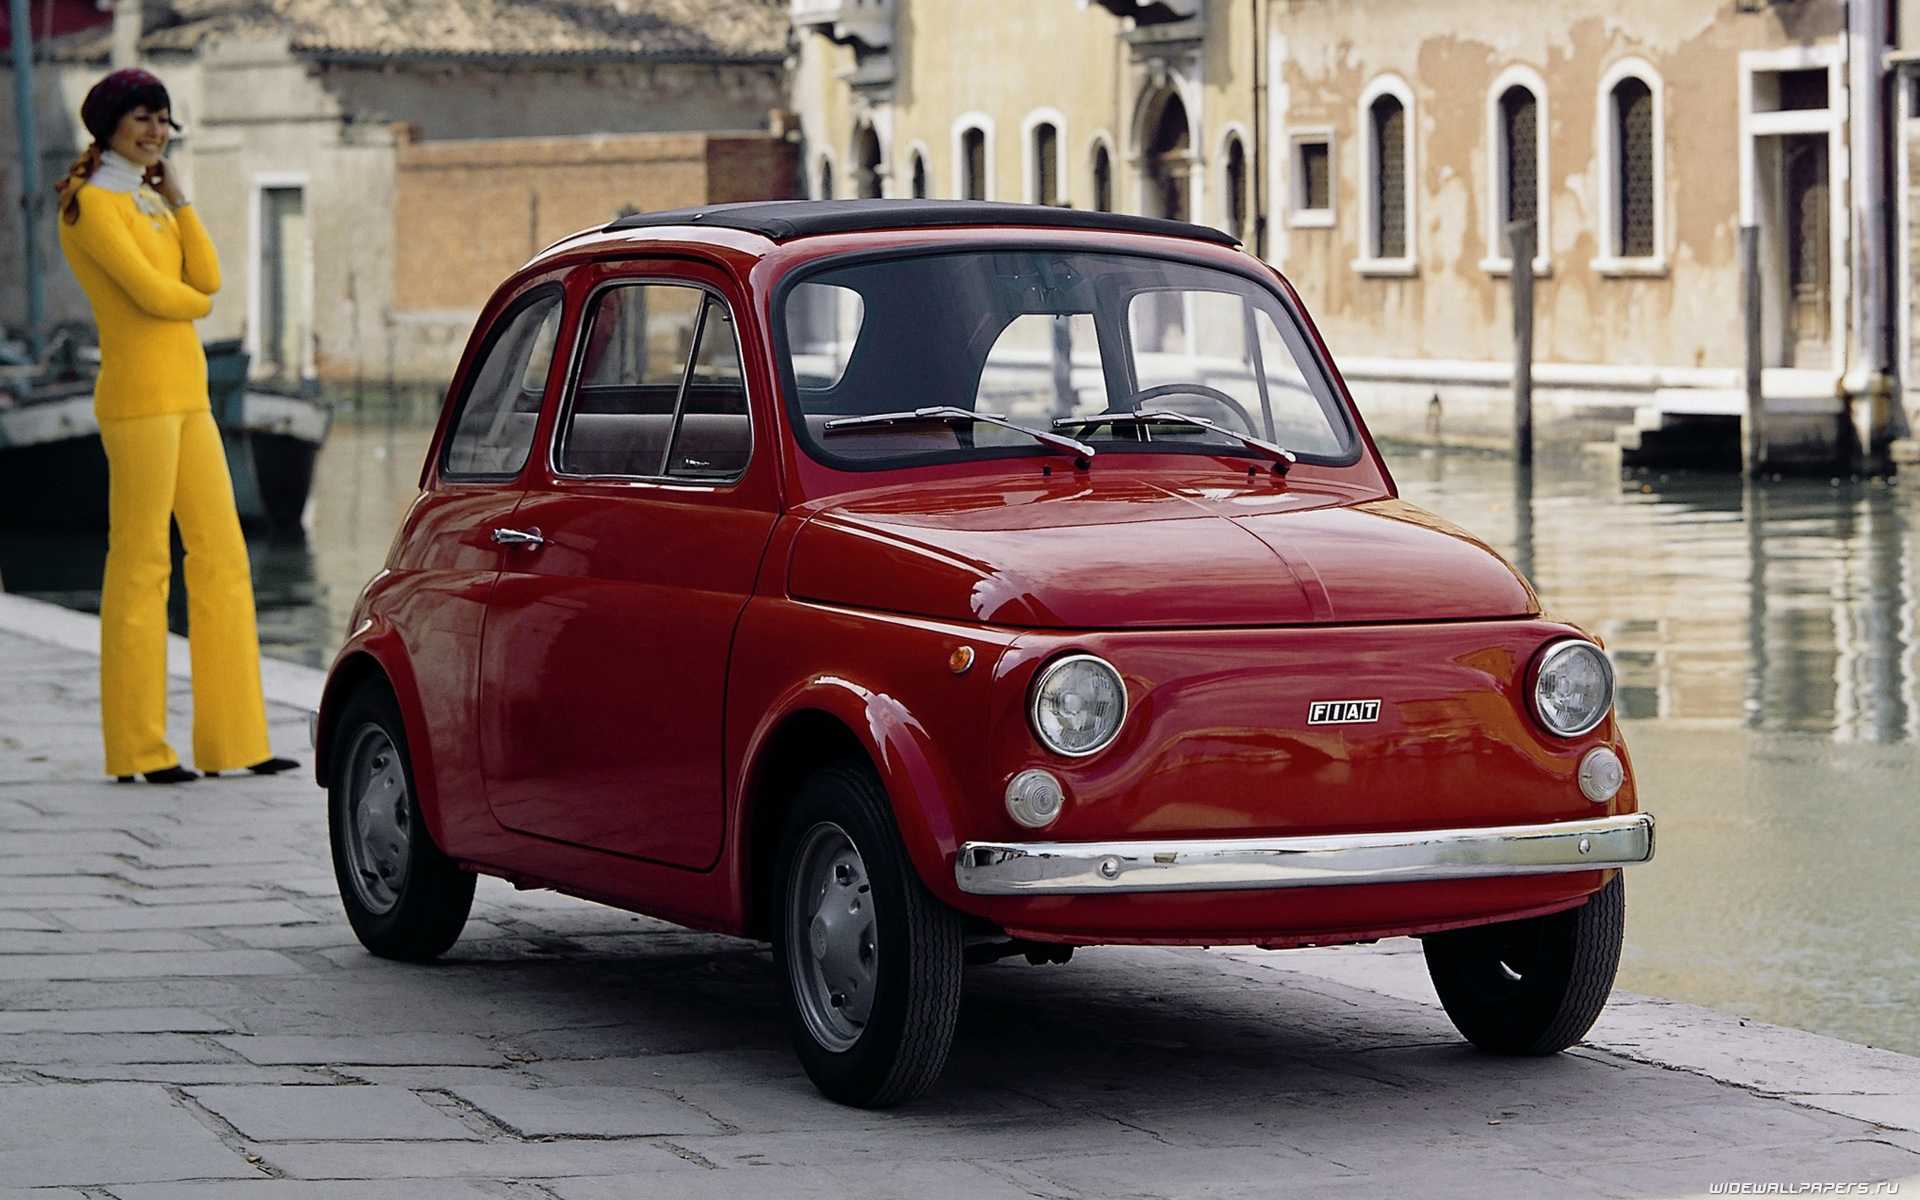 Итальянские марки автомобилей | каталог